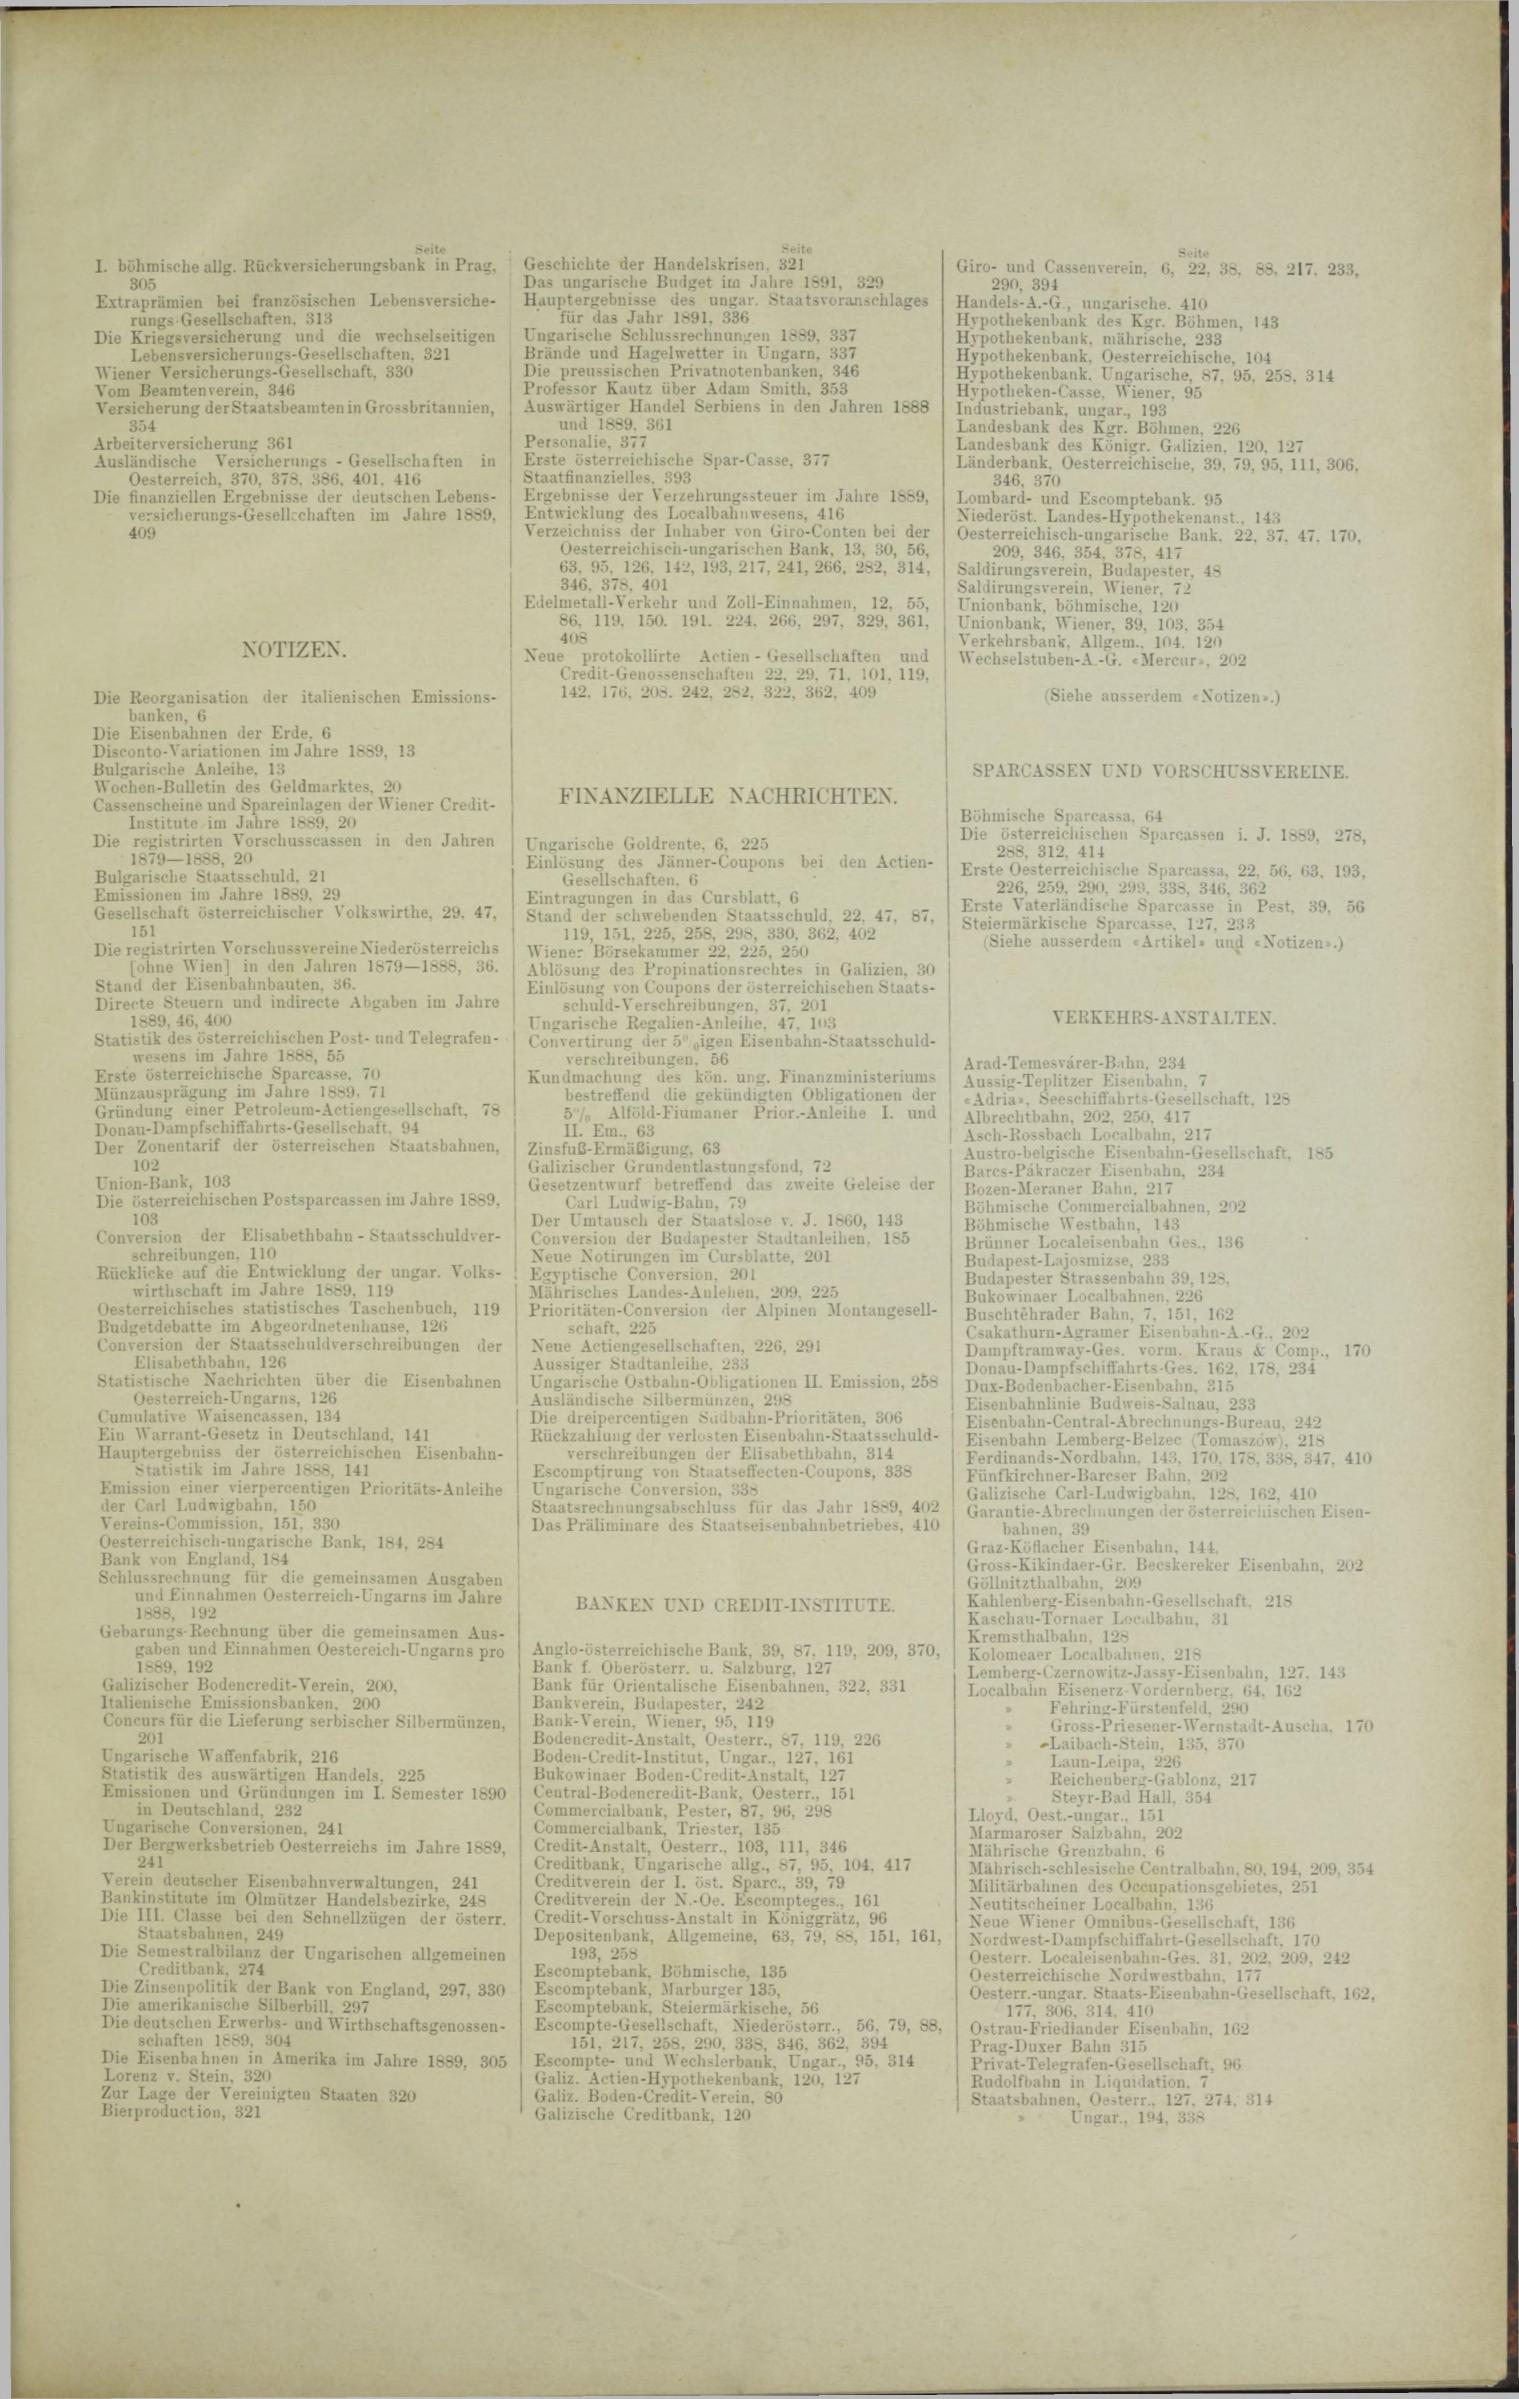 Der Tresor 02.10.1890 - Seite 11